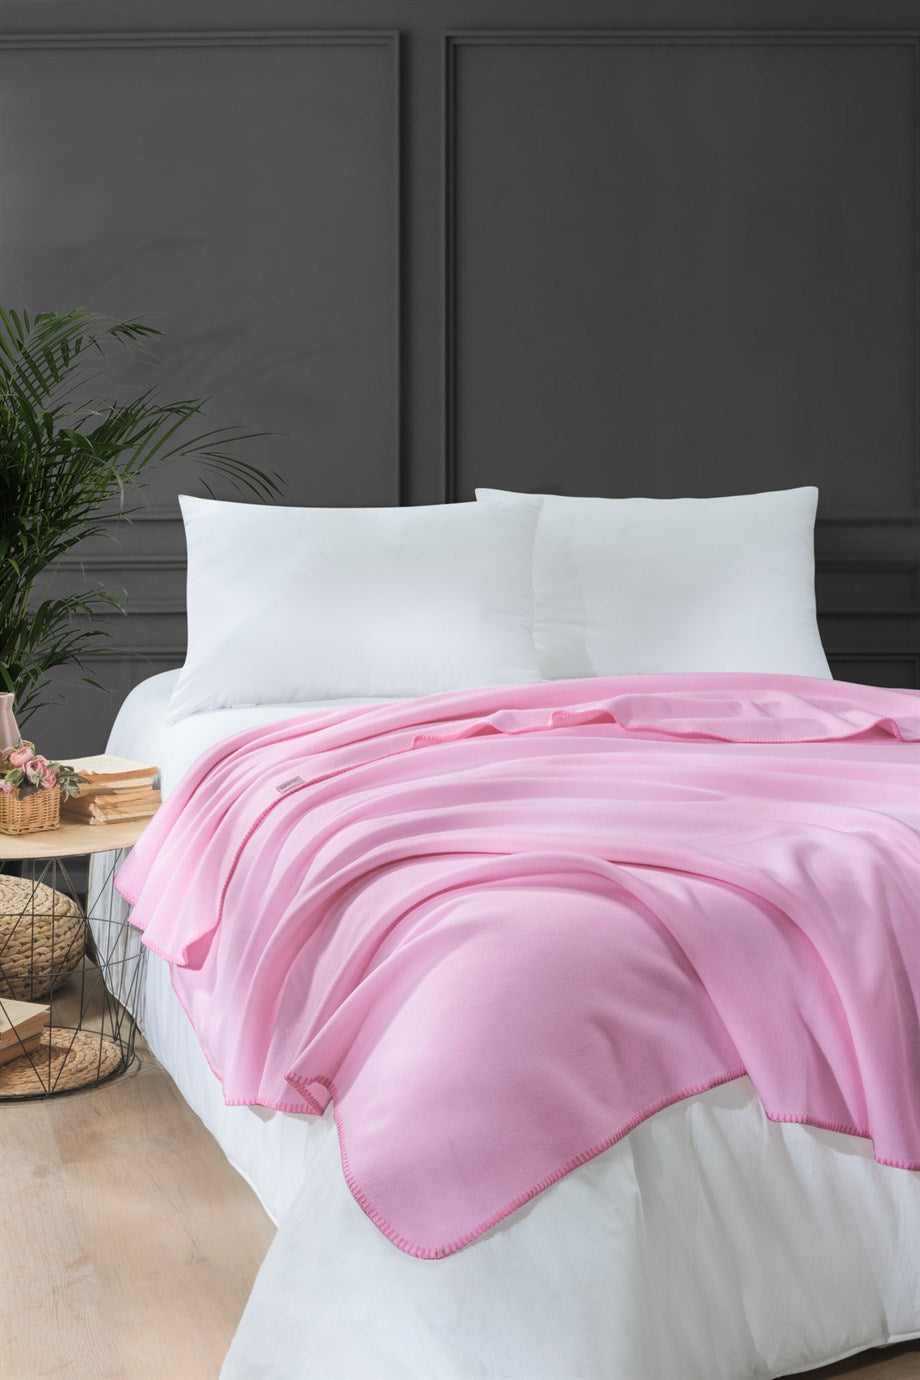 DENIZLI CONCEPT Bloom Fleece Blanket Pink